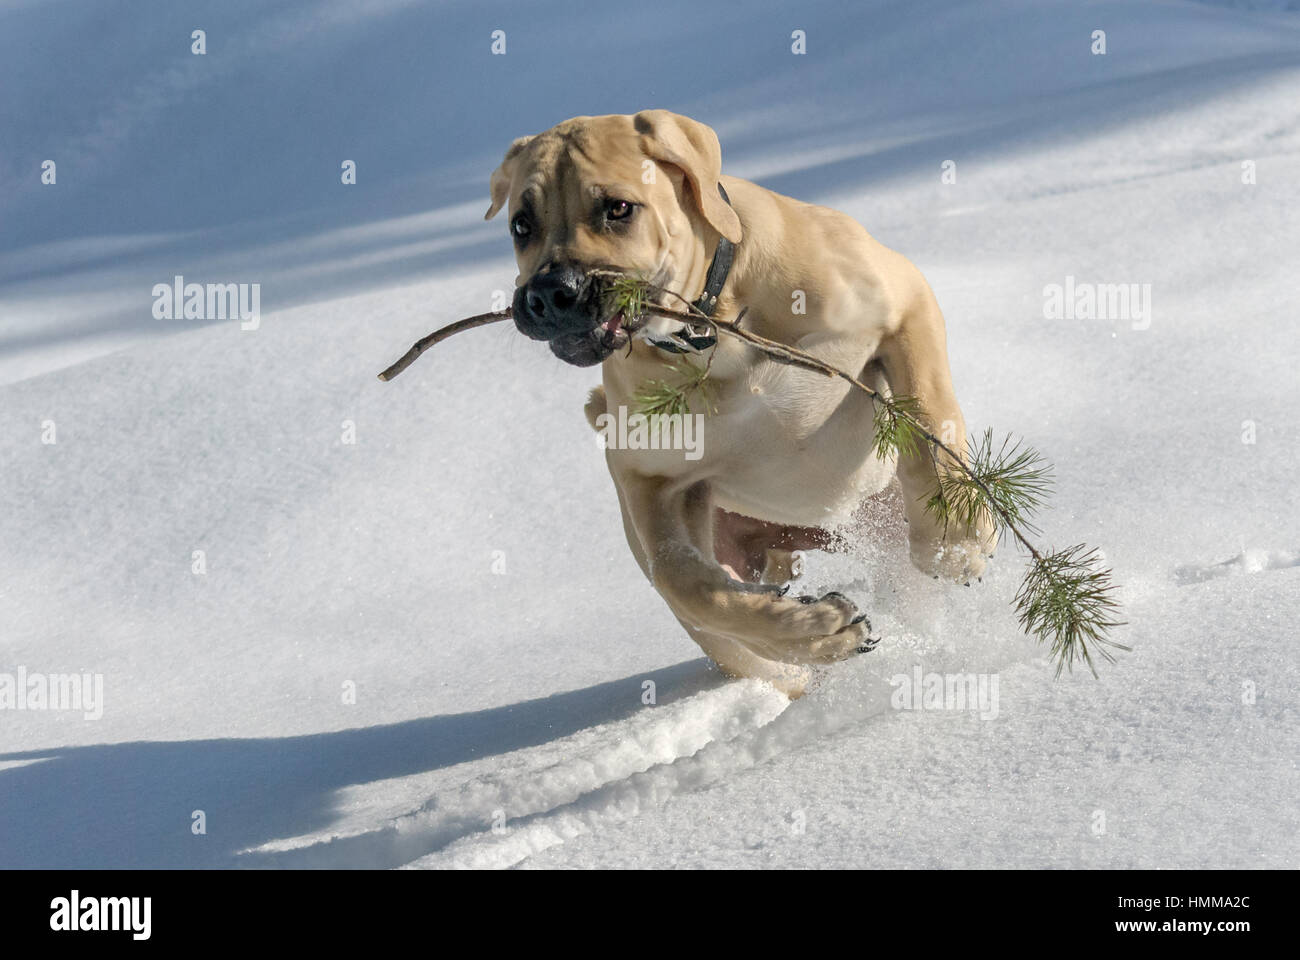 Dog Boerboel / Boerbull / South African Mastiff. Stock Photo